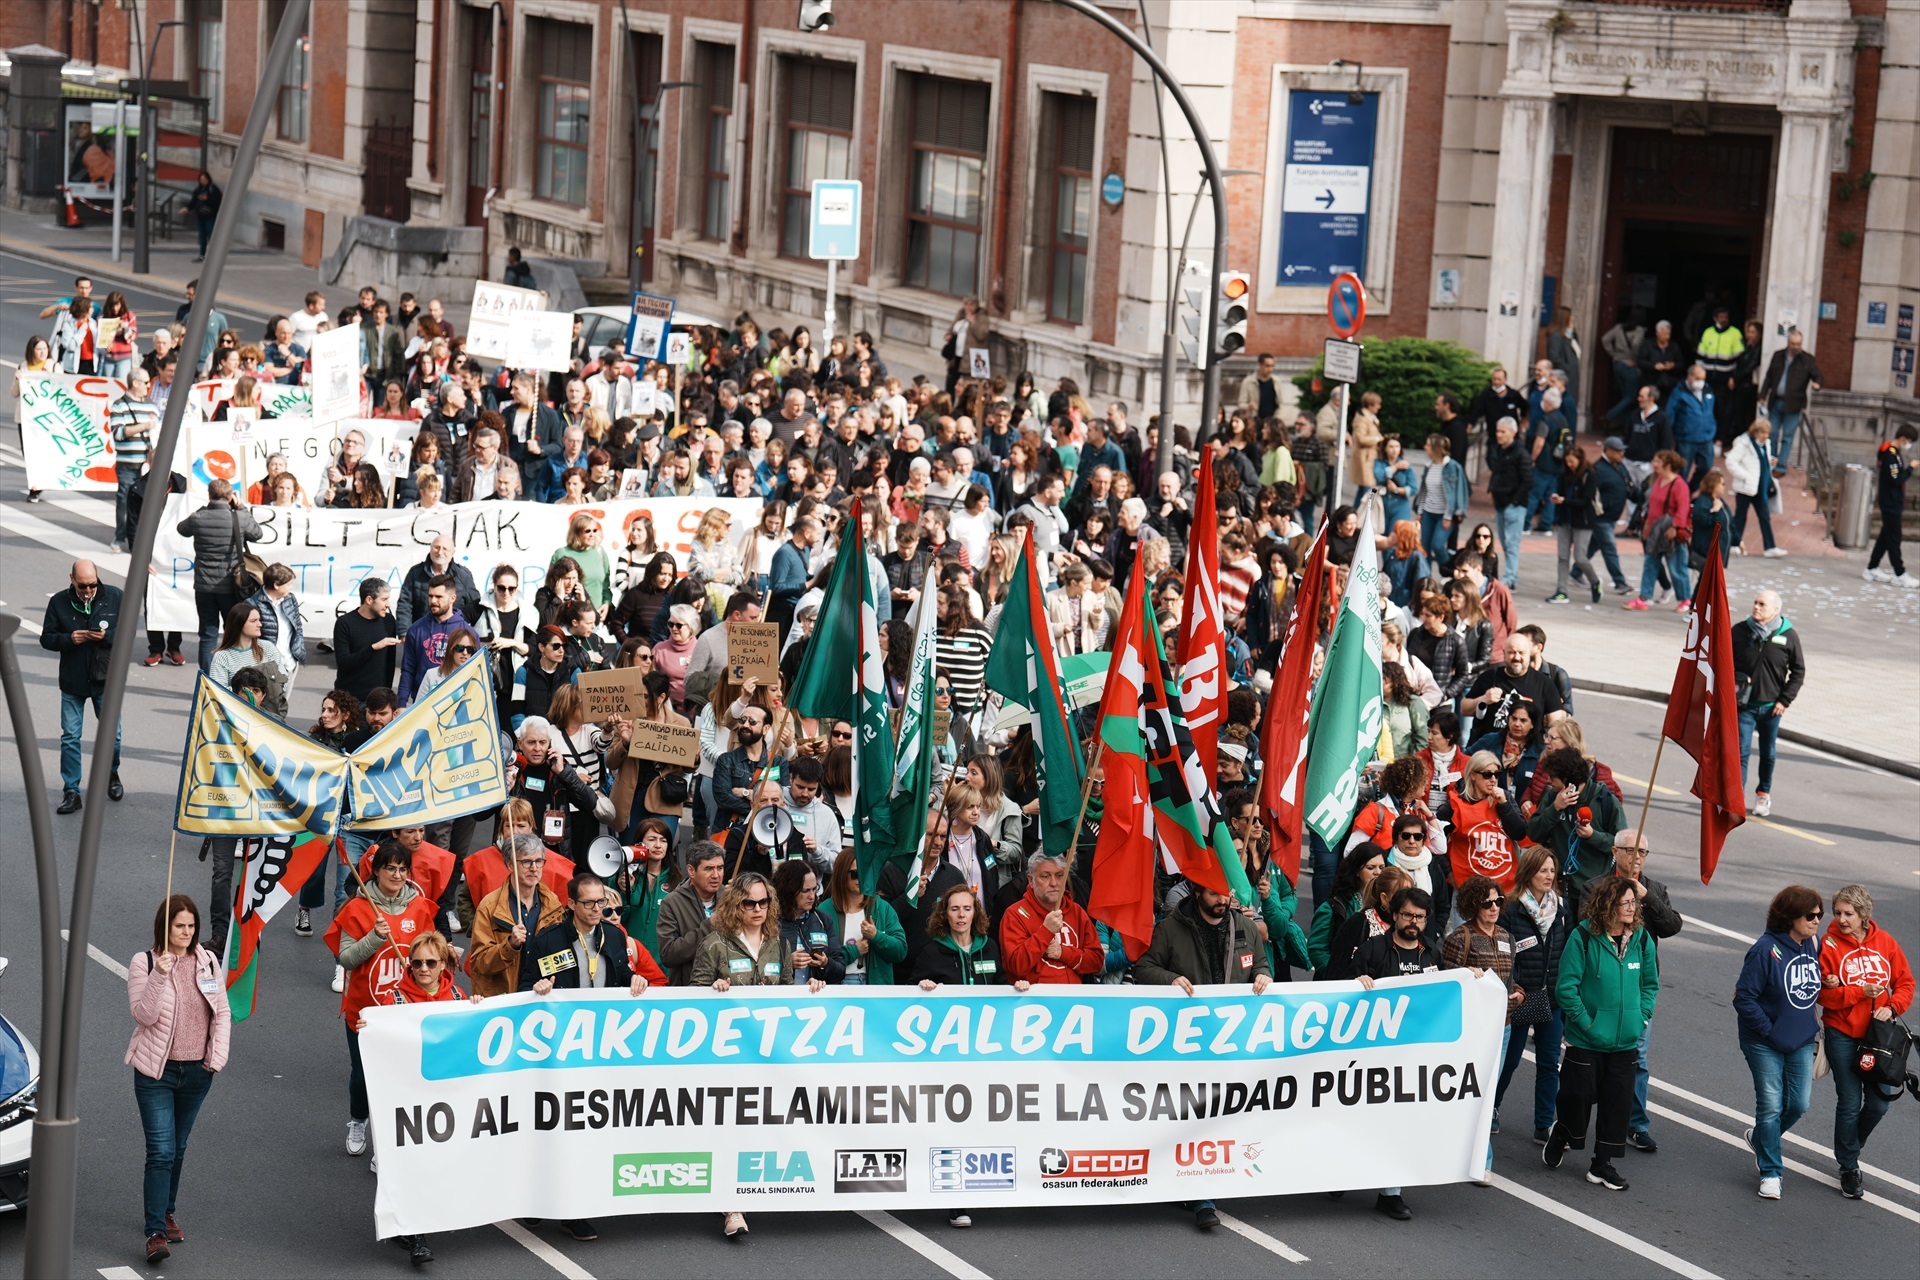 Los sindicatos médicos se muestran satisfechos con el primer día de huelga en Euskadi: “El seguimiento ha sido amplio” 